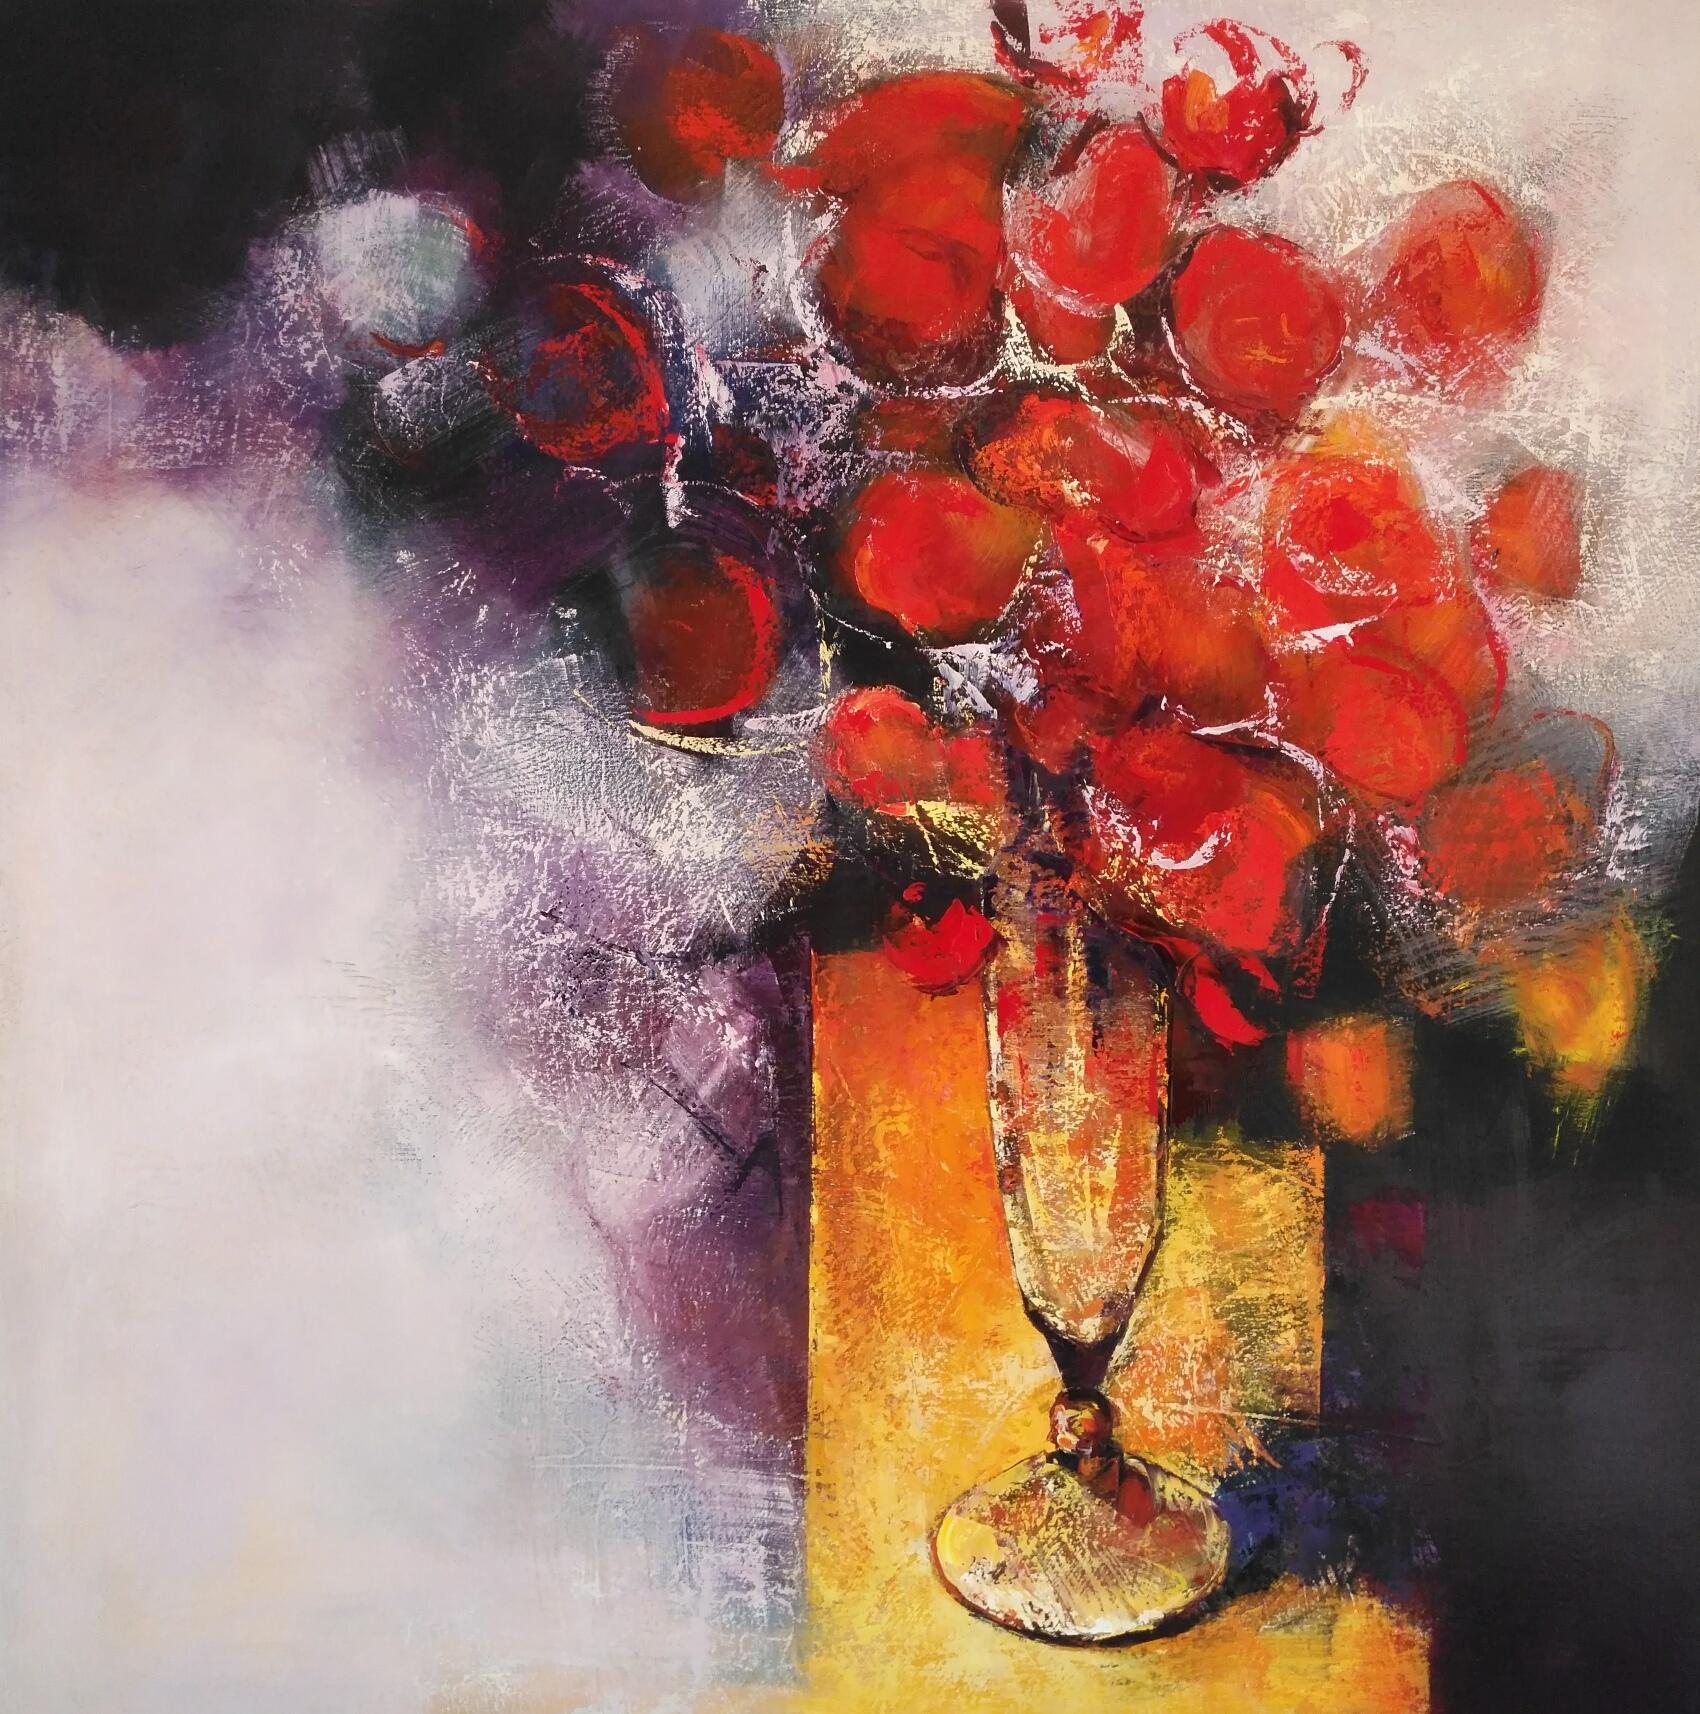 Figurative Painting Tomàs Sunyol - La Post - 21e siècle, Contemporain, Nature morte, Peinture à l'huile, Fleurs rouges